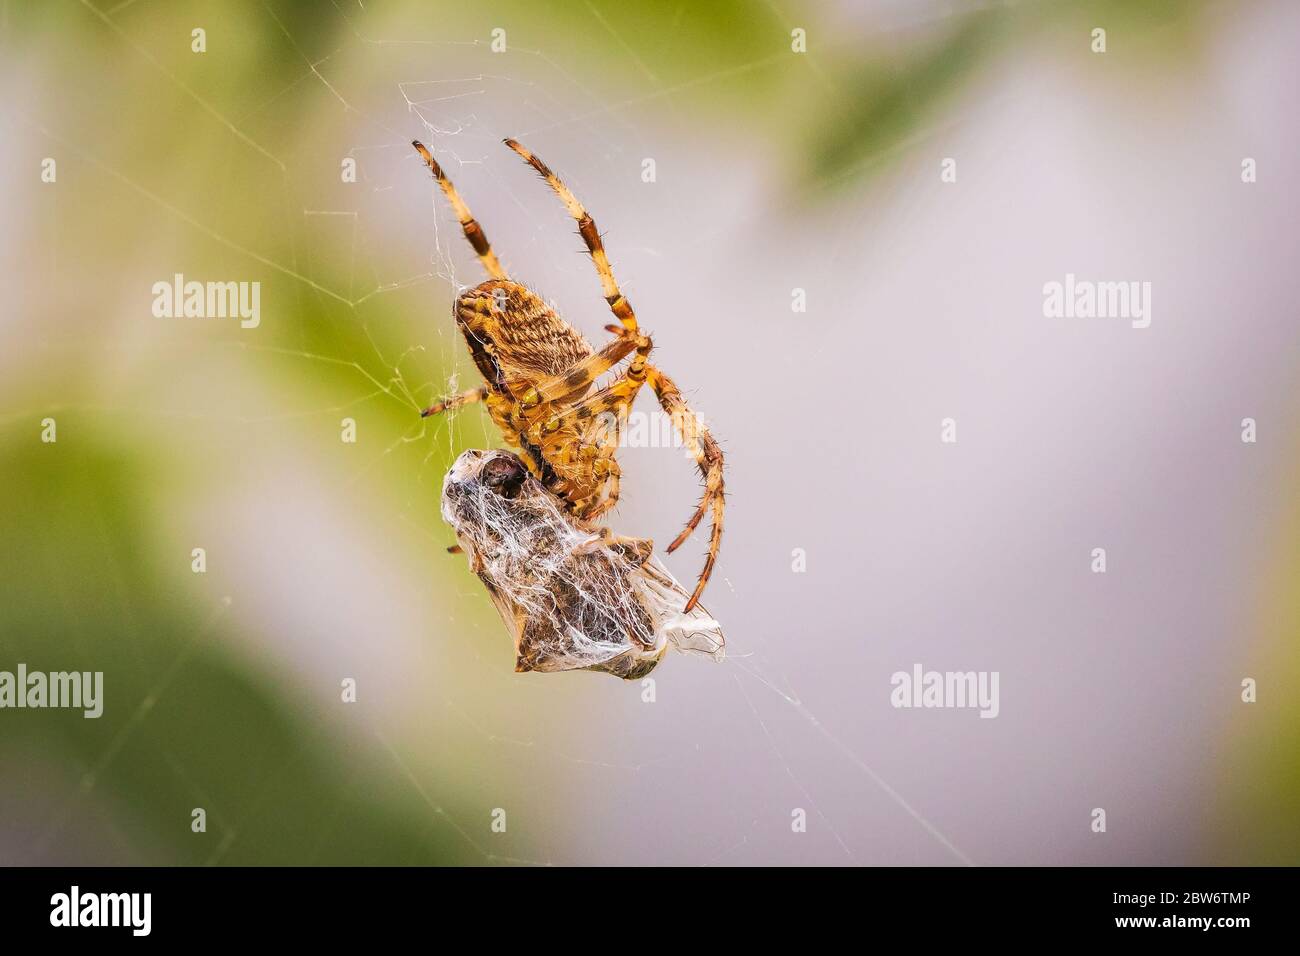 Primo piano di una croce spider, araneus diadematus, mangiare una preda catturati in un sito web Foto Stock